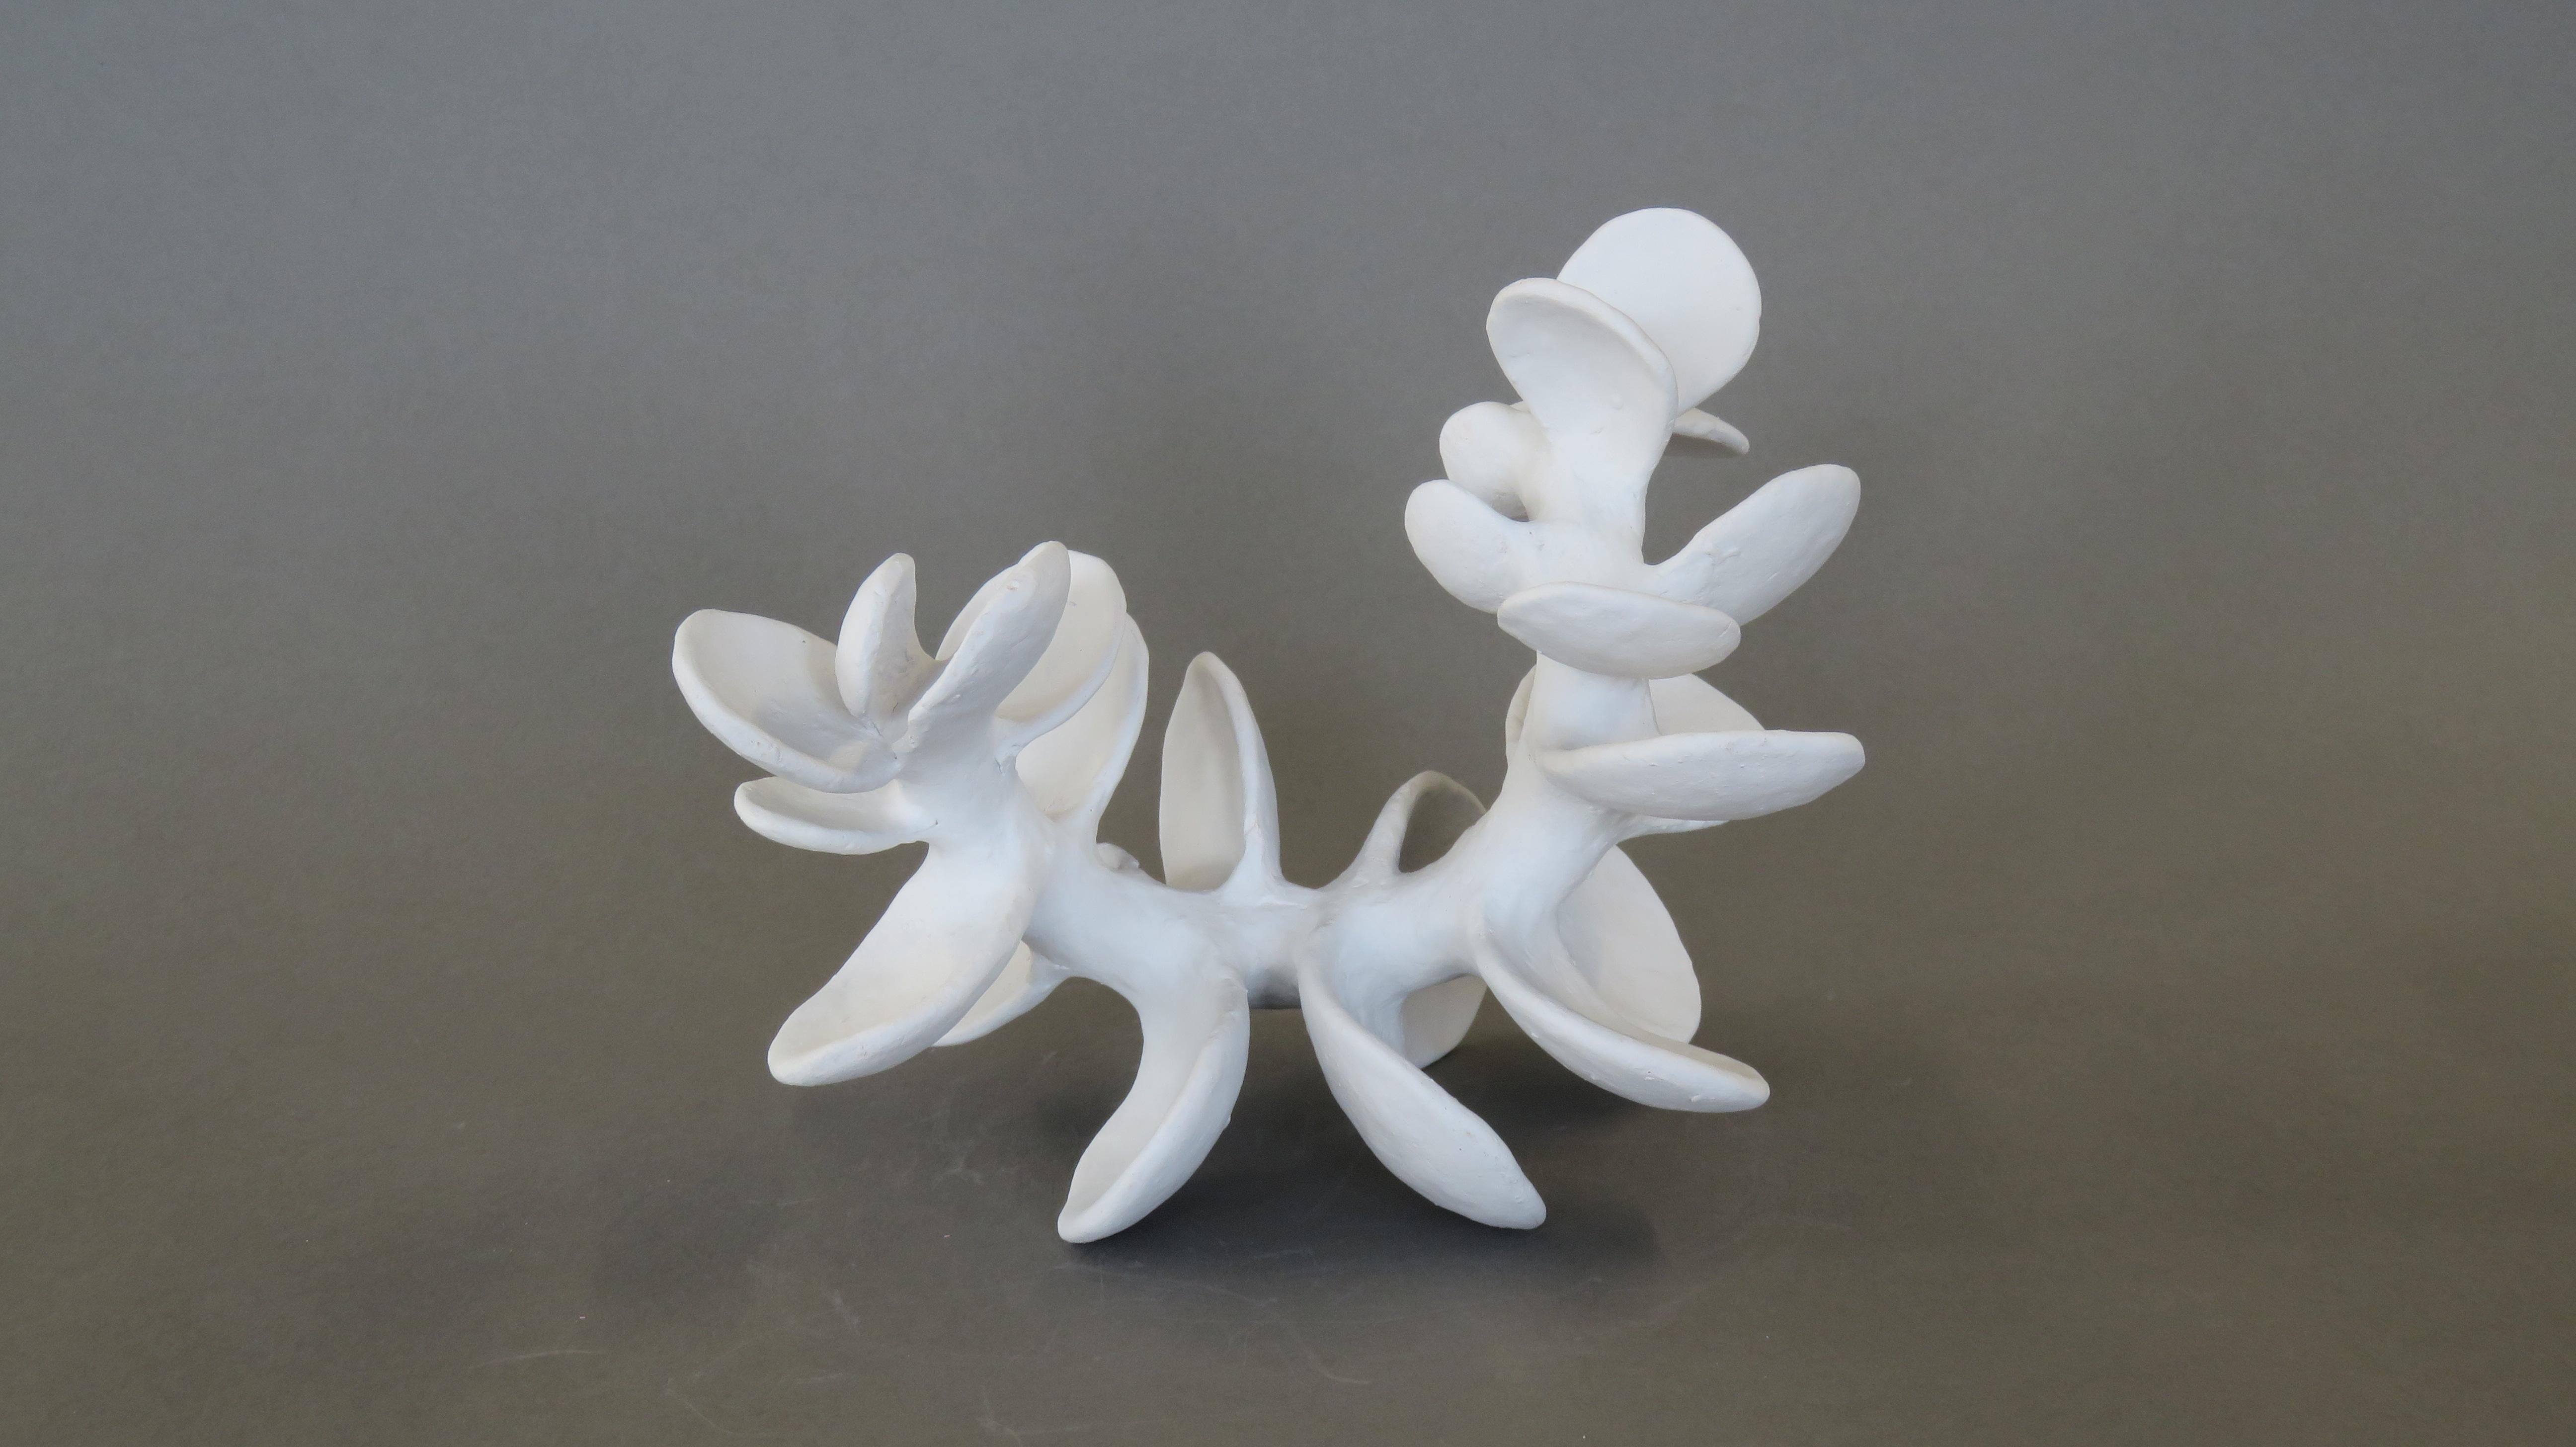 Handgefertigte Keramik-Skulptur:: Wirbel mit puderweißen Blütenblättern 2